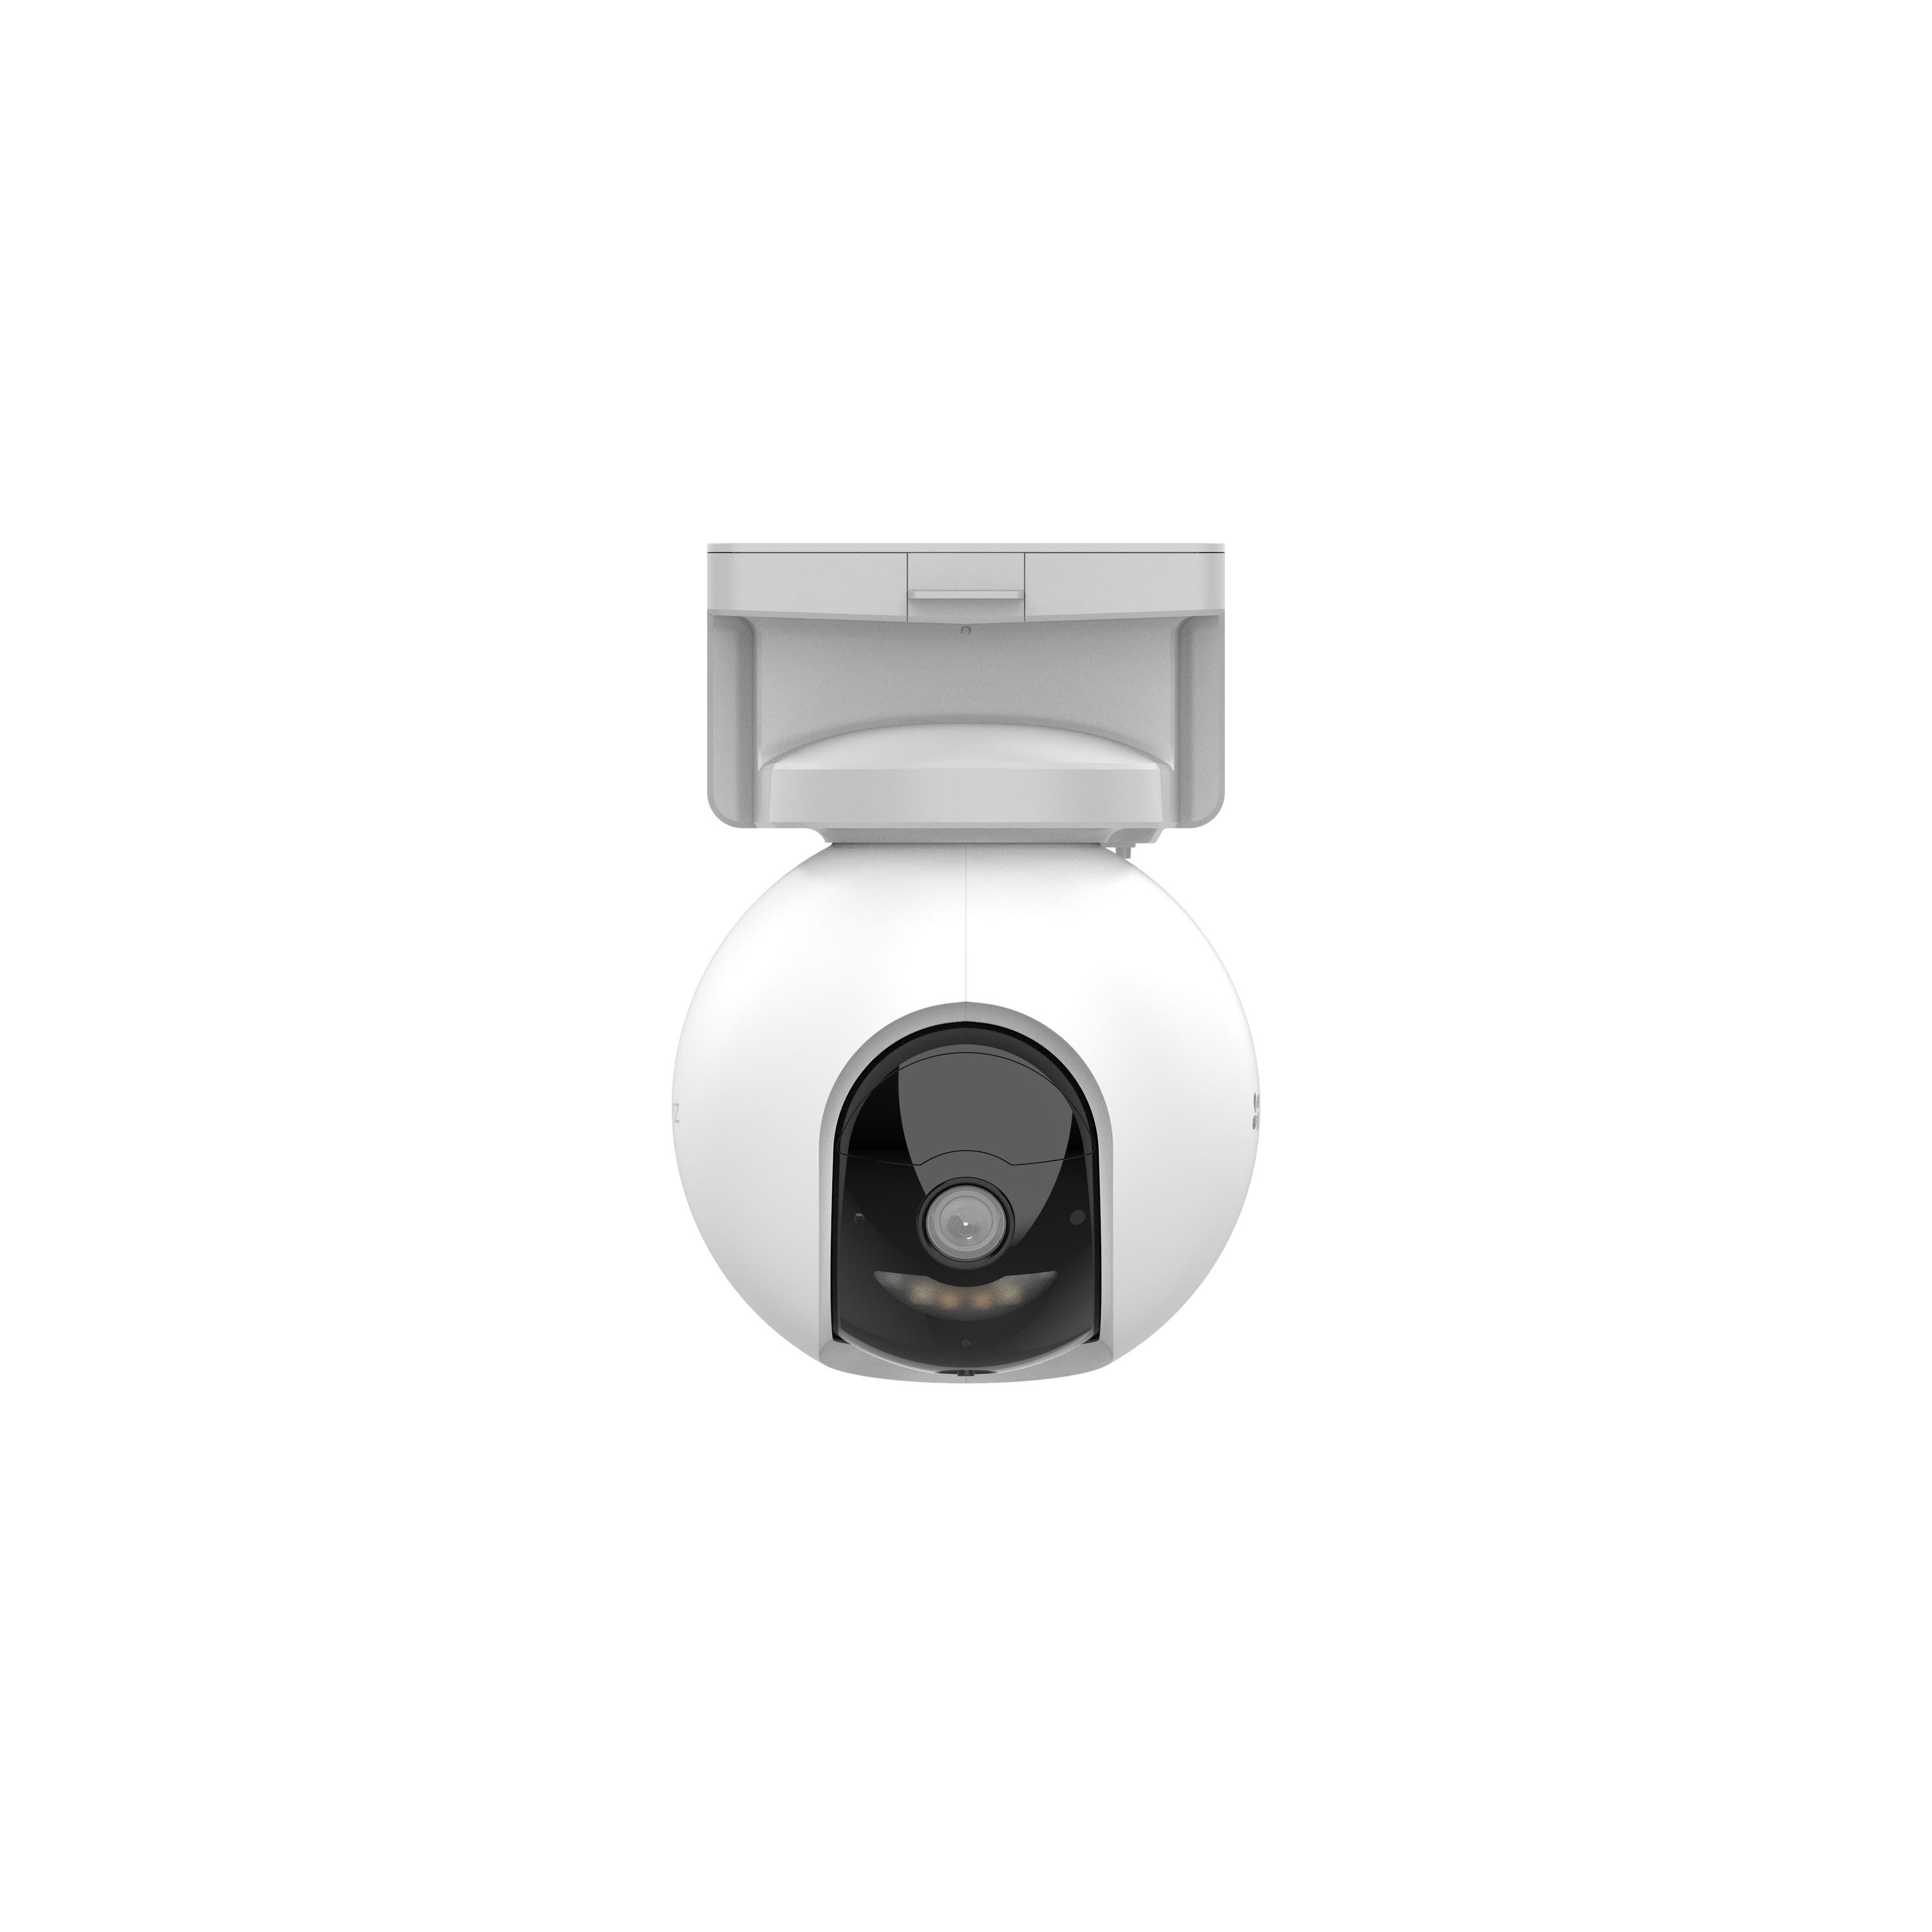 Caméra de surveillance extérieure filaire C3W PRO, blanc, Ezviz